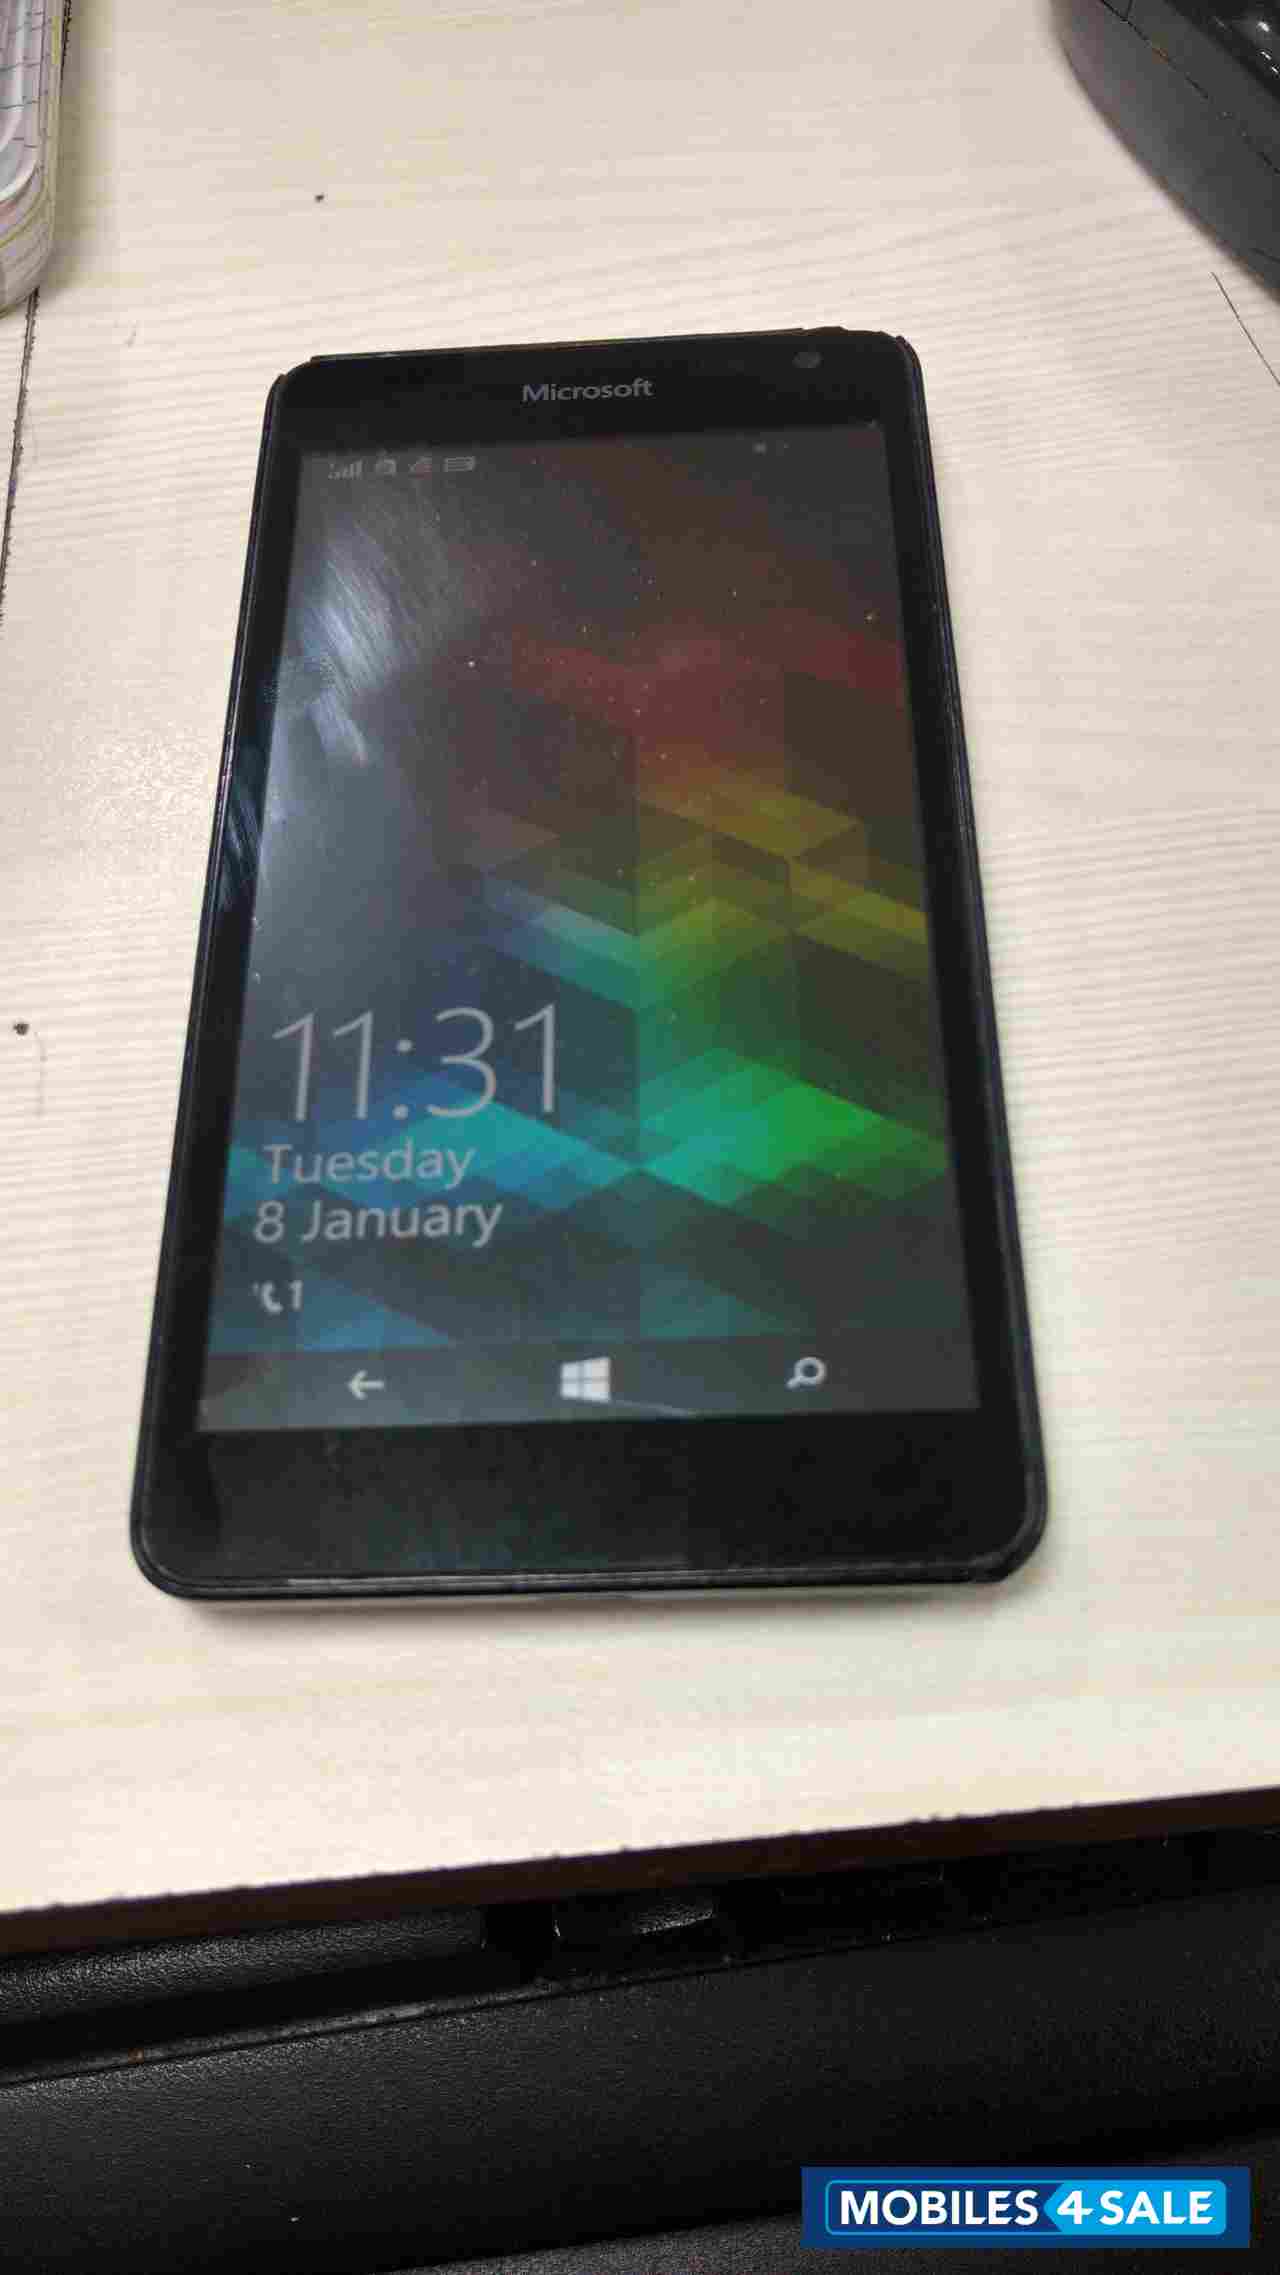 Black Nokia Lumia